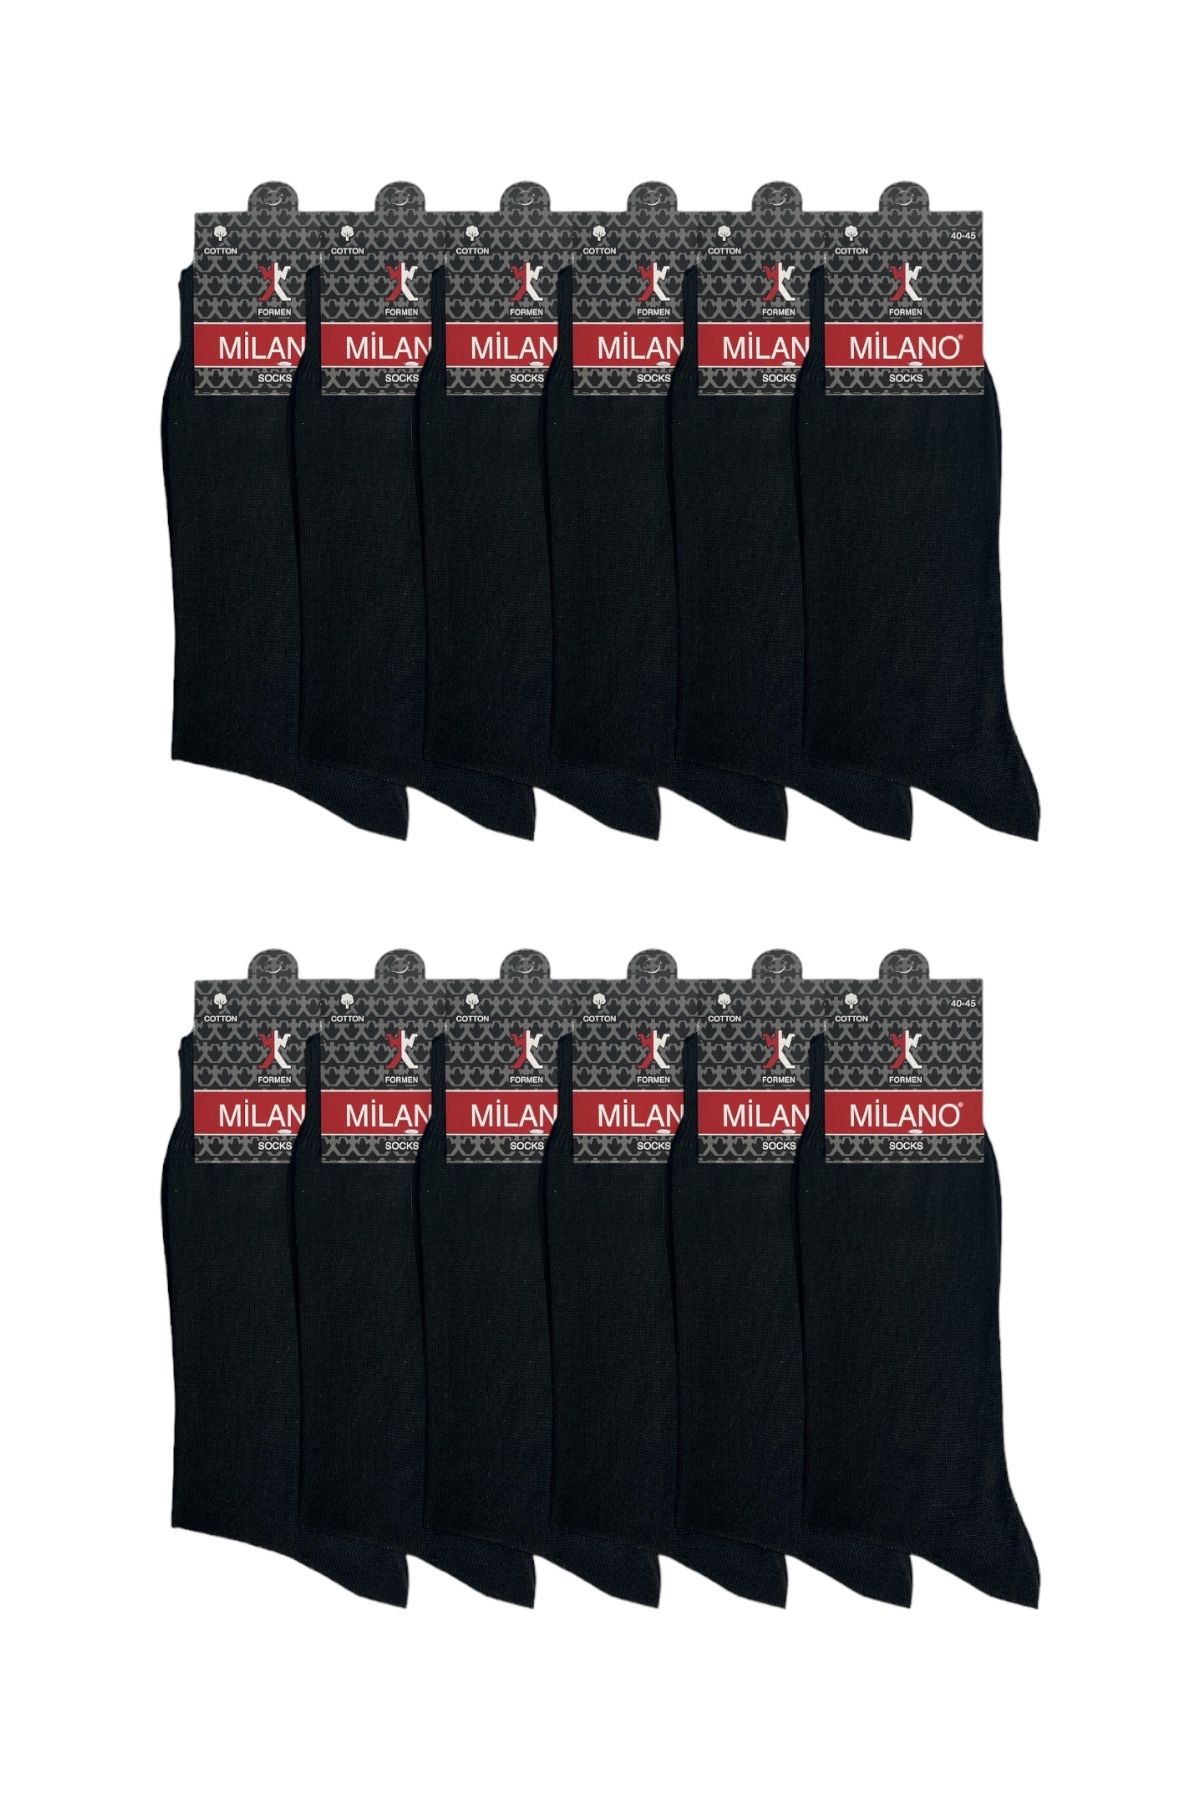 Milano Çorap 12'li Süper Ekonomik Erkek Pamuklu Düz Siyah Çorap, Uzun Desensiz Pamuklu Çorap (12 ÇİFT)